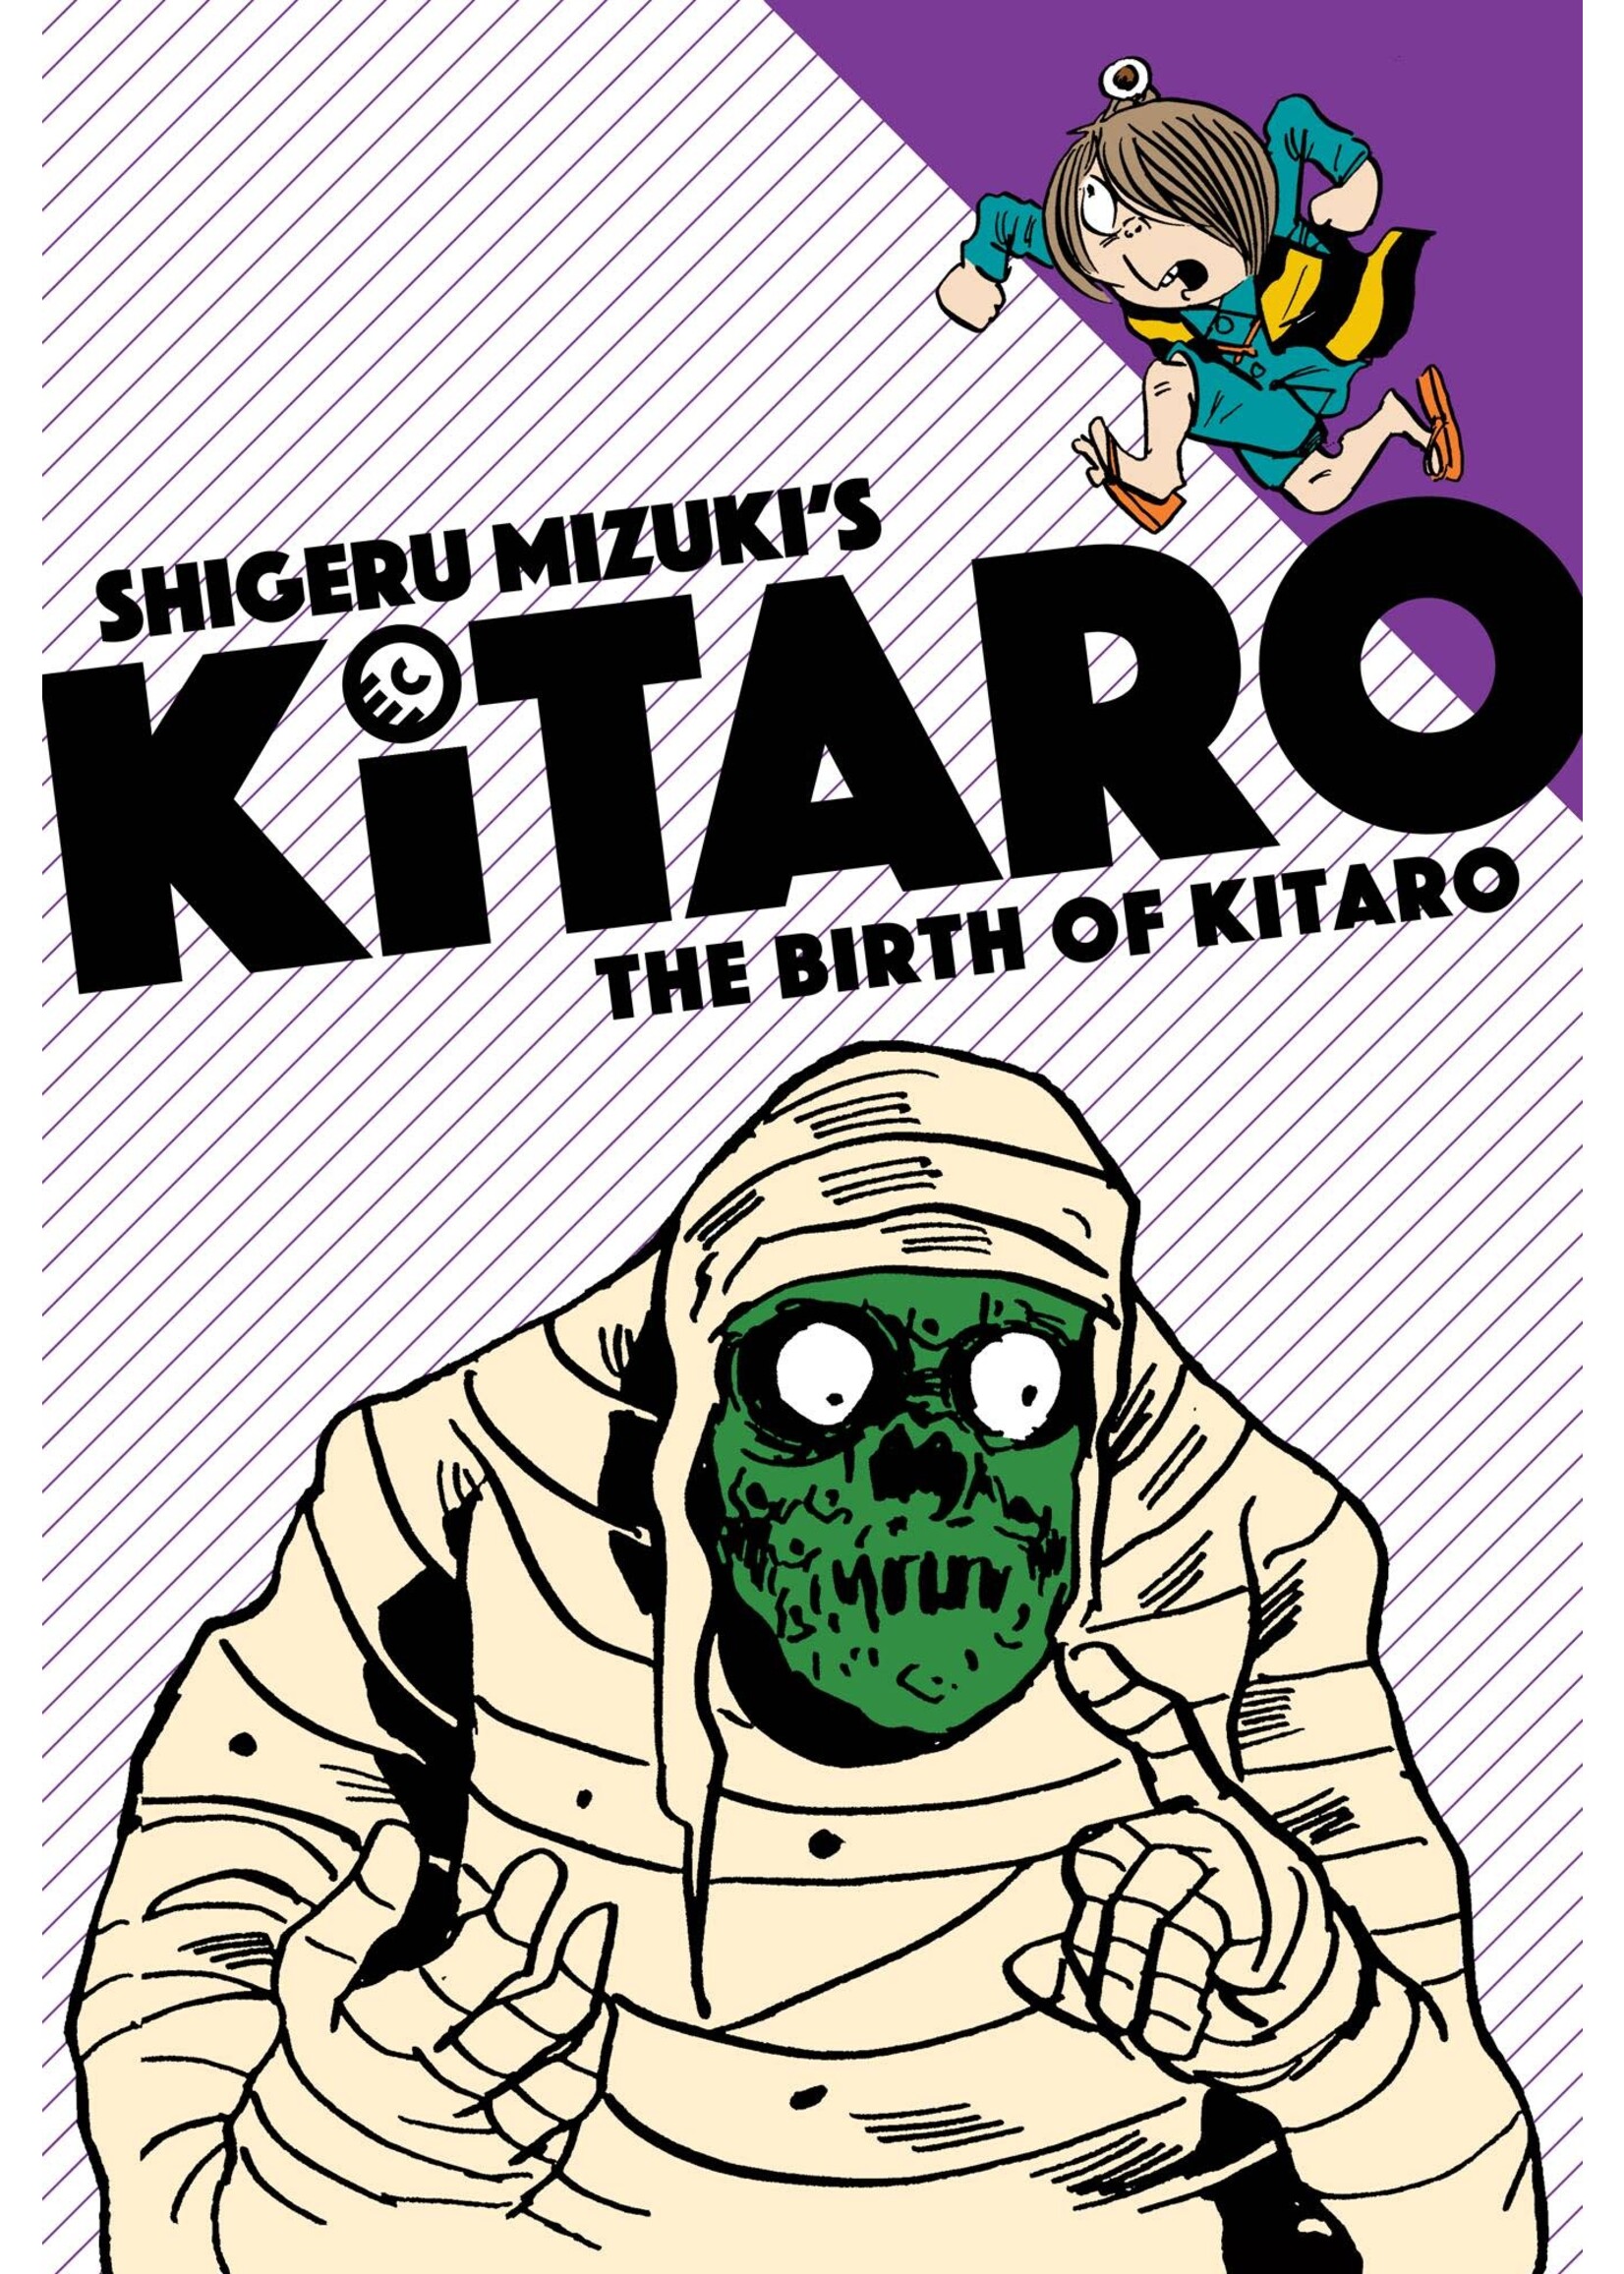 DRAWN & QUARTERLY KITARO GN VOL 01 BIRTH OF KITARO